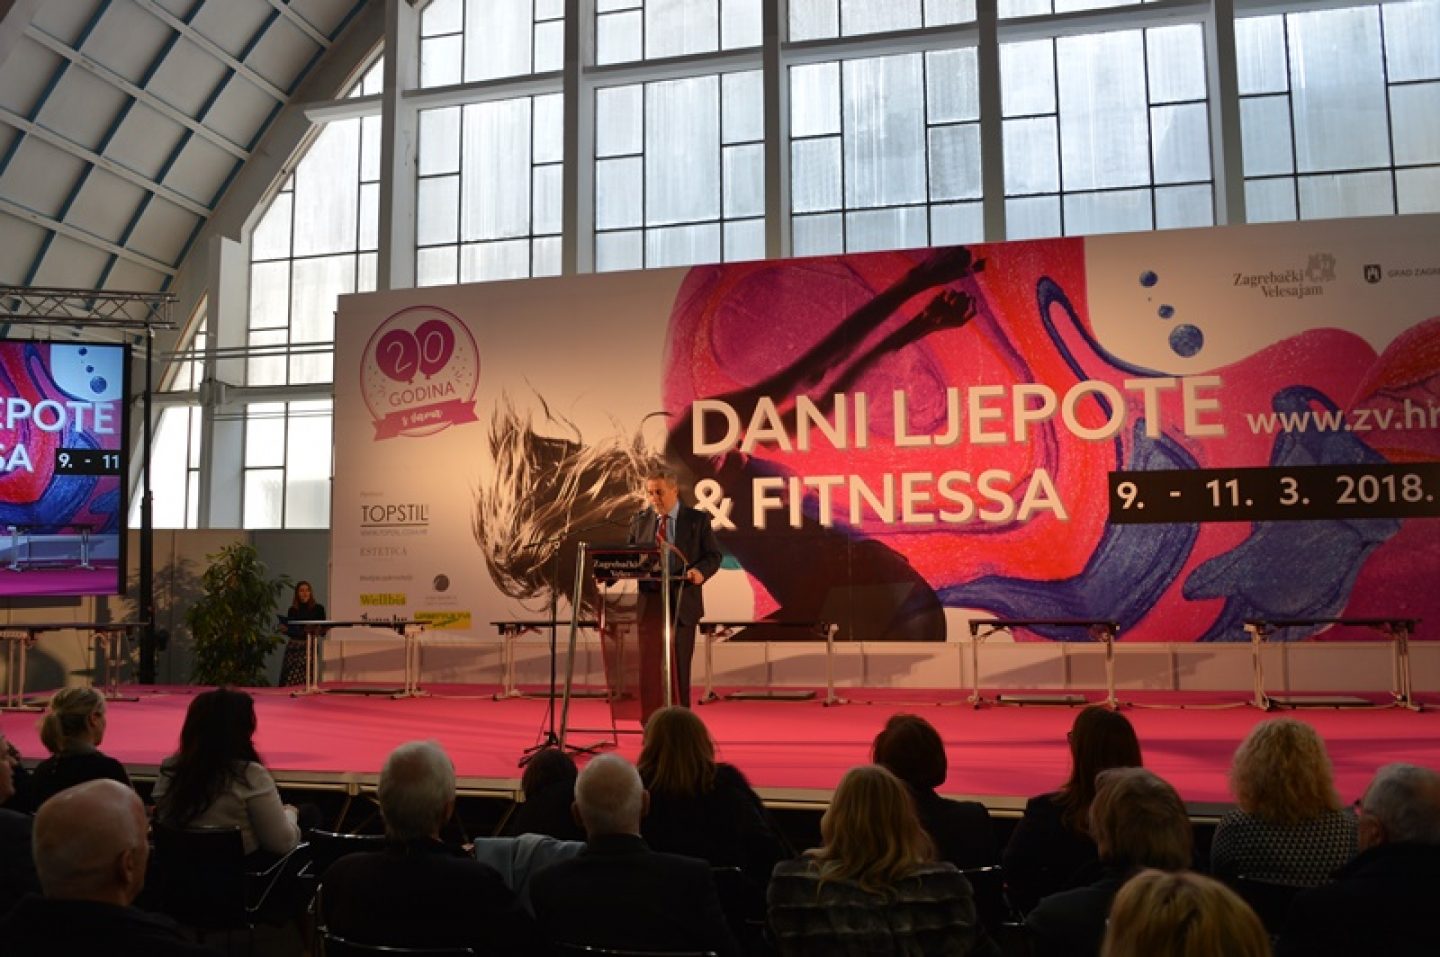 Gradonačelnik Bandić otvorio jubilarni 20. po redu sajam “Dani ljepote i fitnessa”